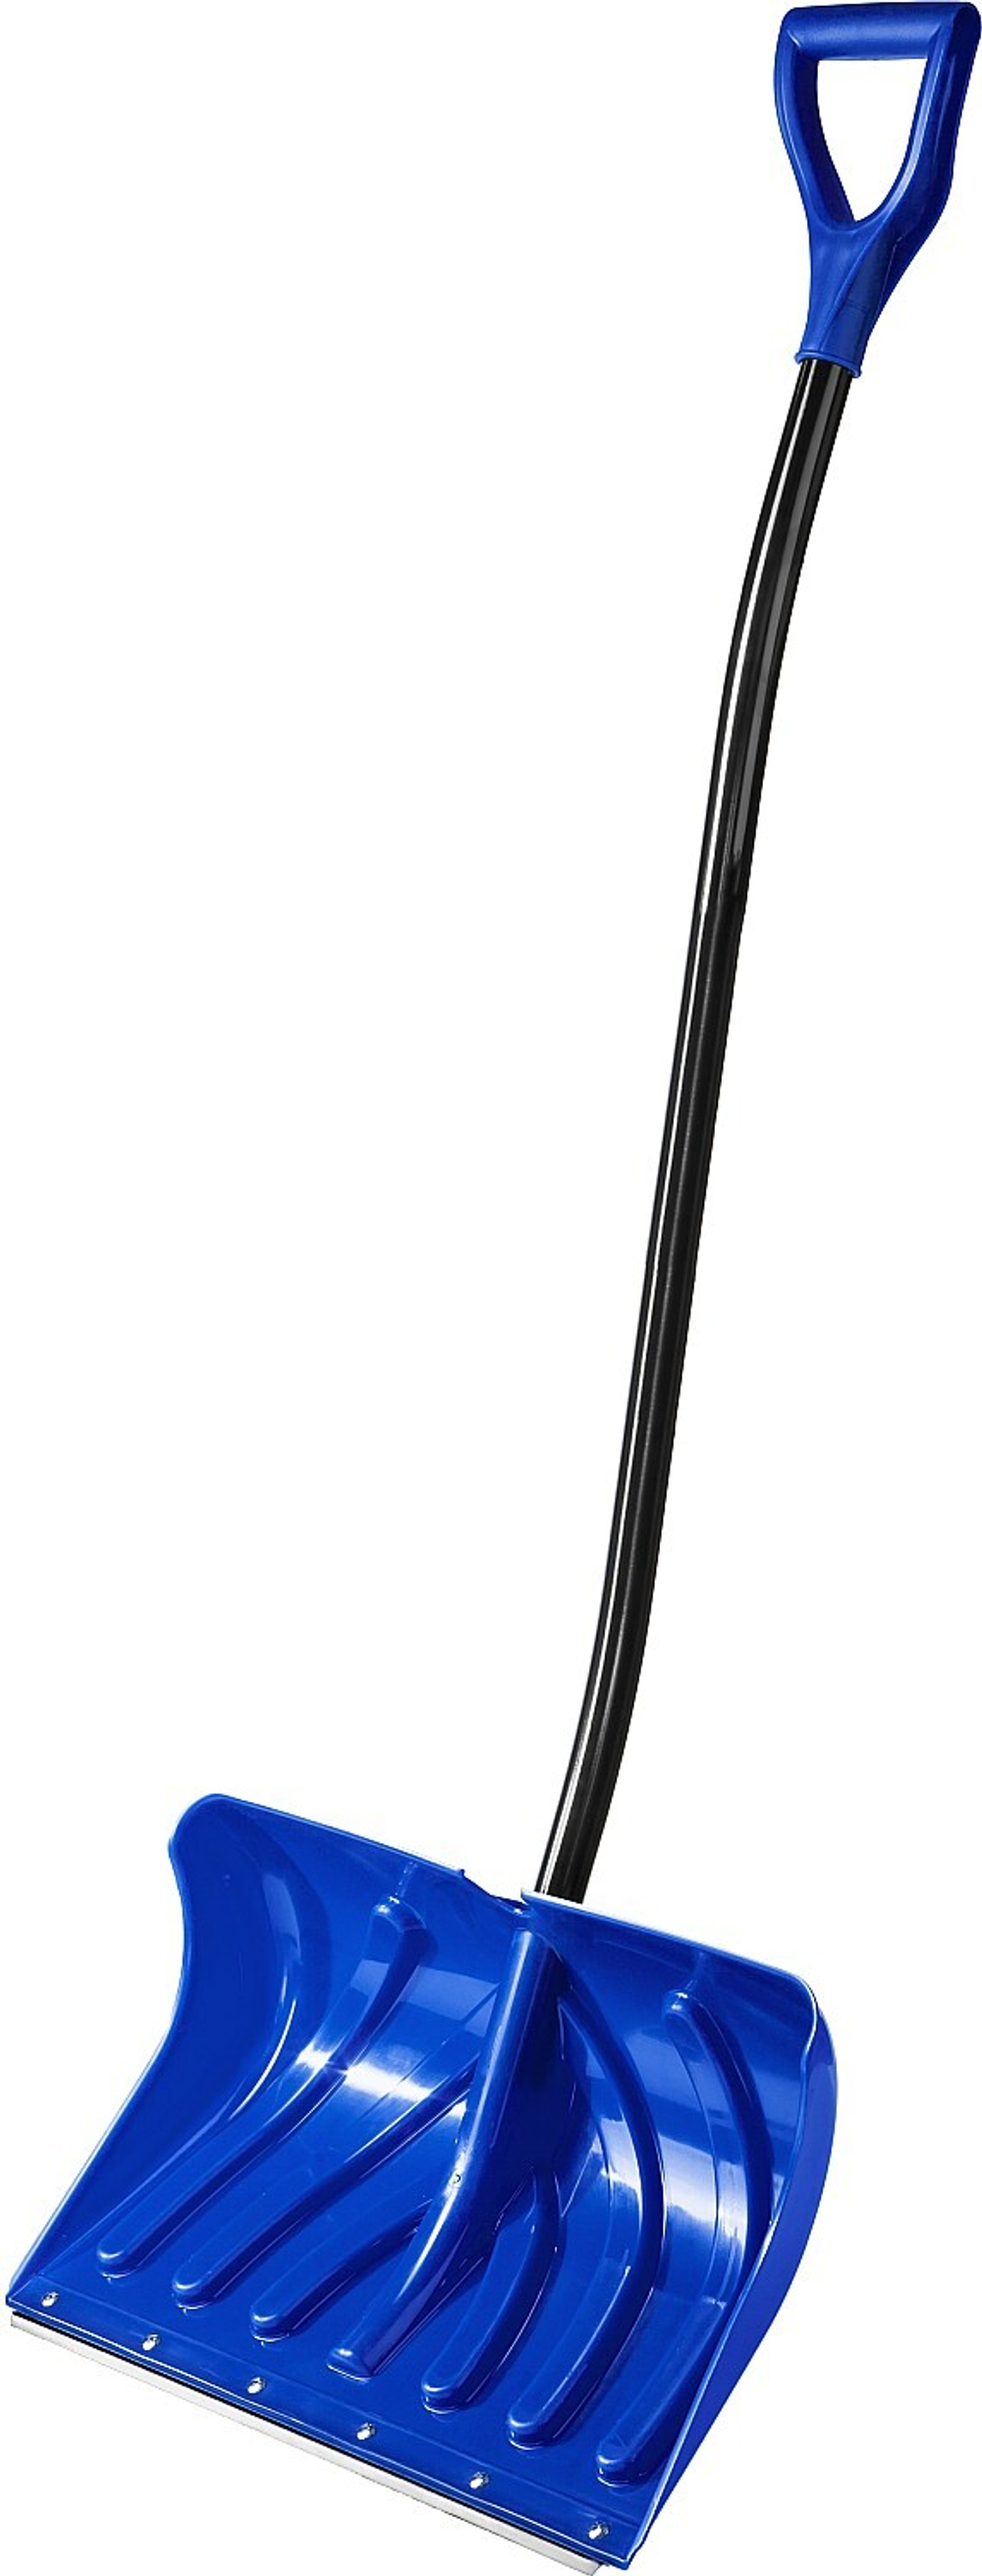 Снеговая лопата ЗУБР СИБИРЬ 500 мм пластиковая со стальной планкой эргономичный алюминиевый черенок V-ручка